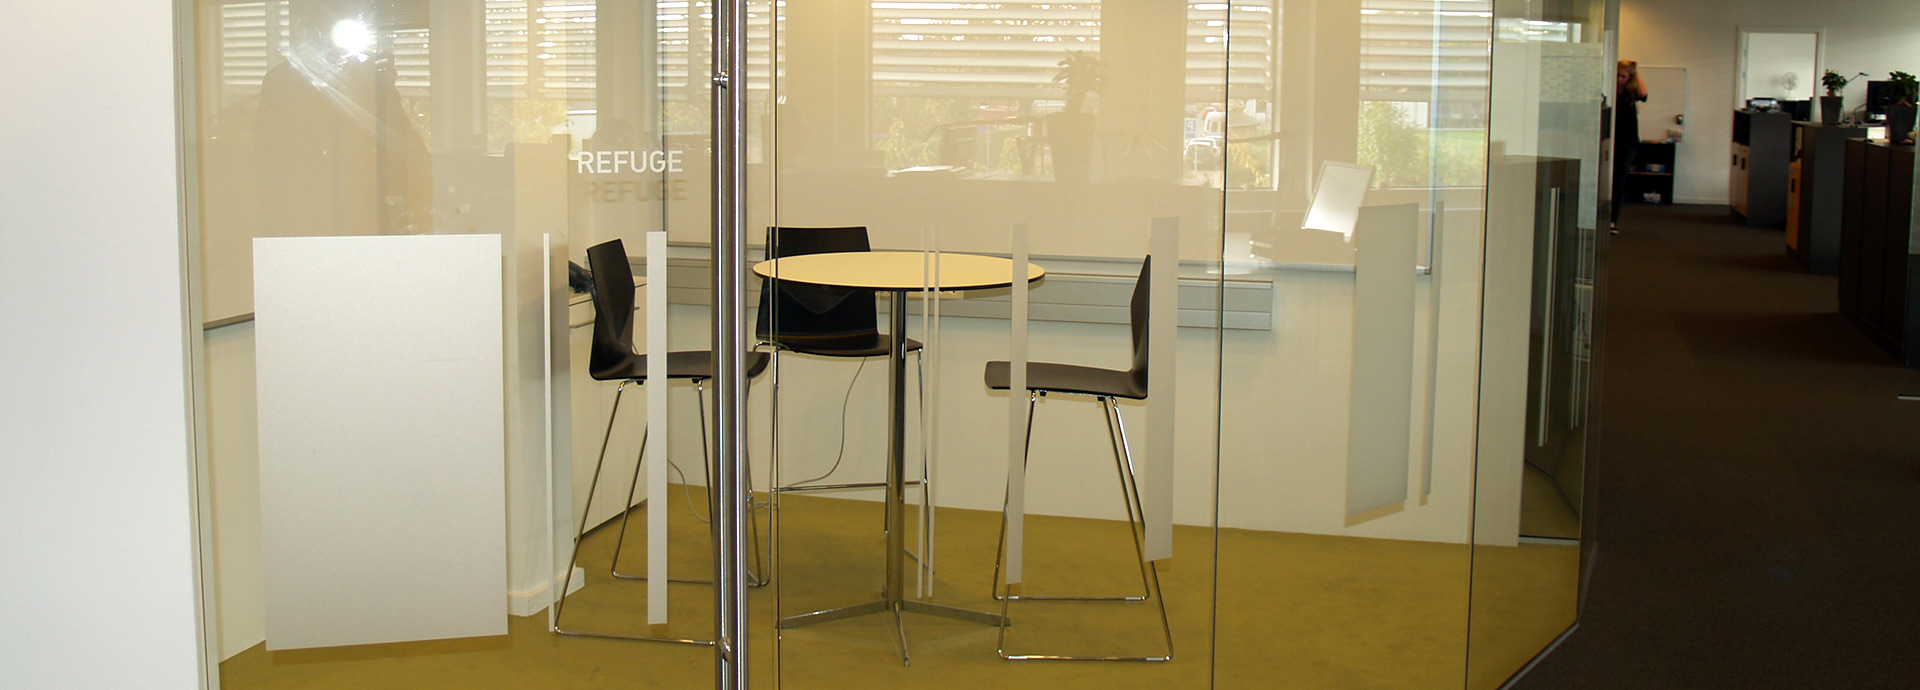 Glasskillevægge i nybyggeri & glasafskærmning til mødelokaler i kontor og erhvervbyggeri